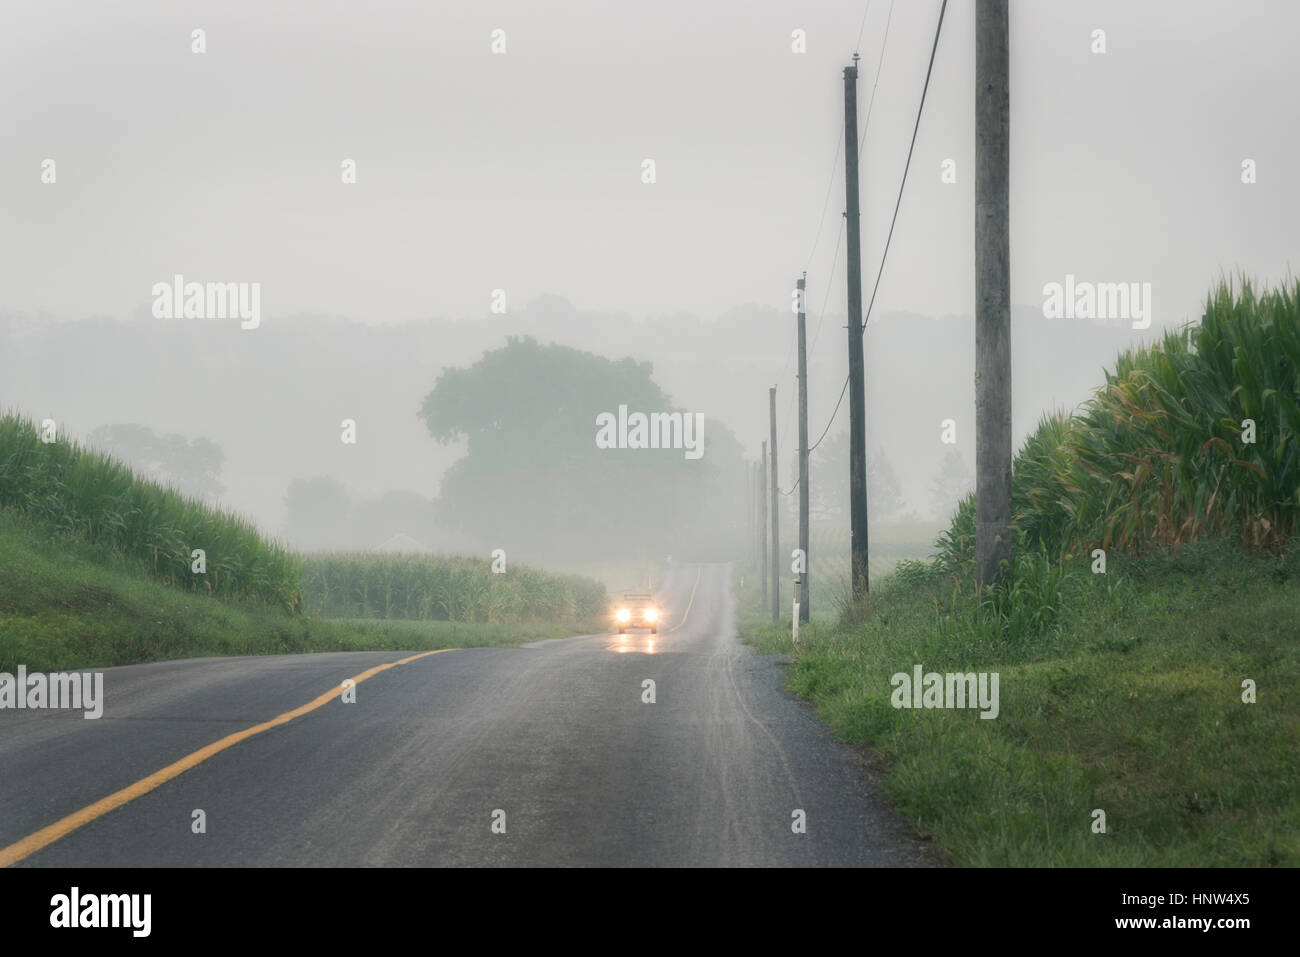 L'approche de voiture sur route à deux voies de brouillard Banque D'Images